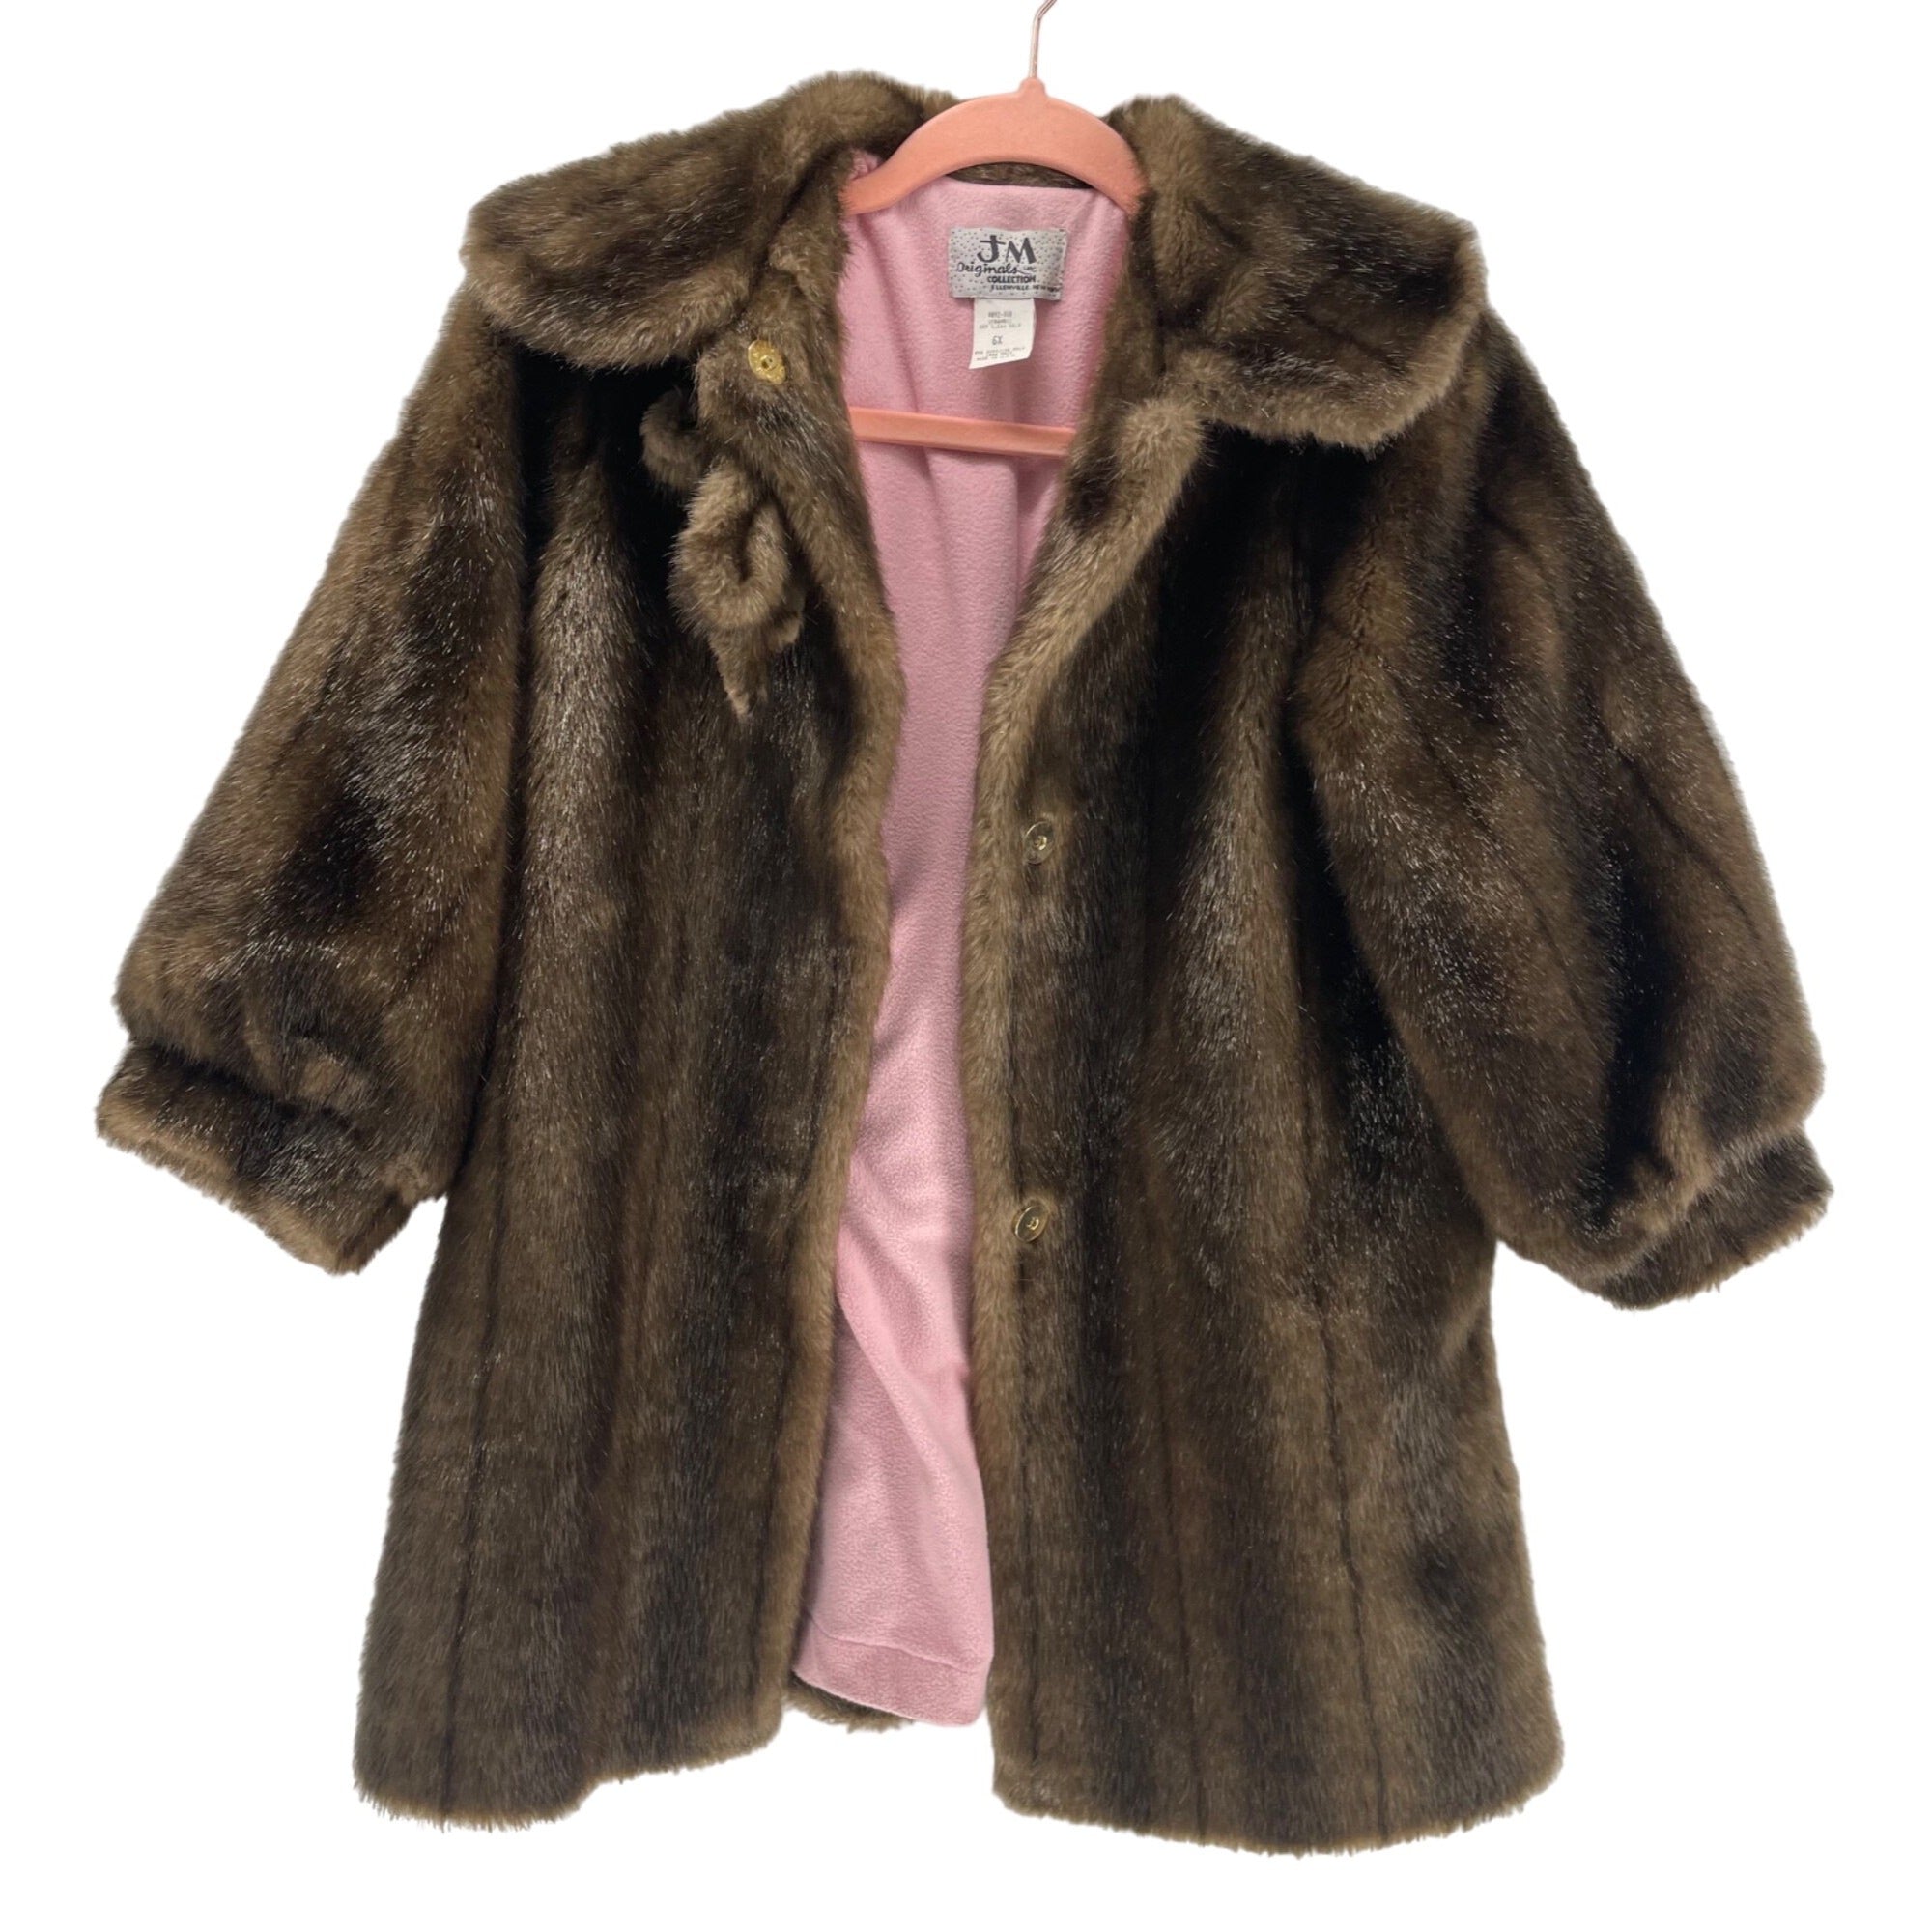 JM Originals Women’s 6X Brown Faux Fur Three Quarter-Length Sleeve Coat